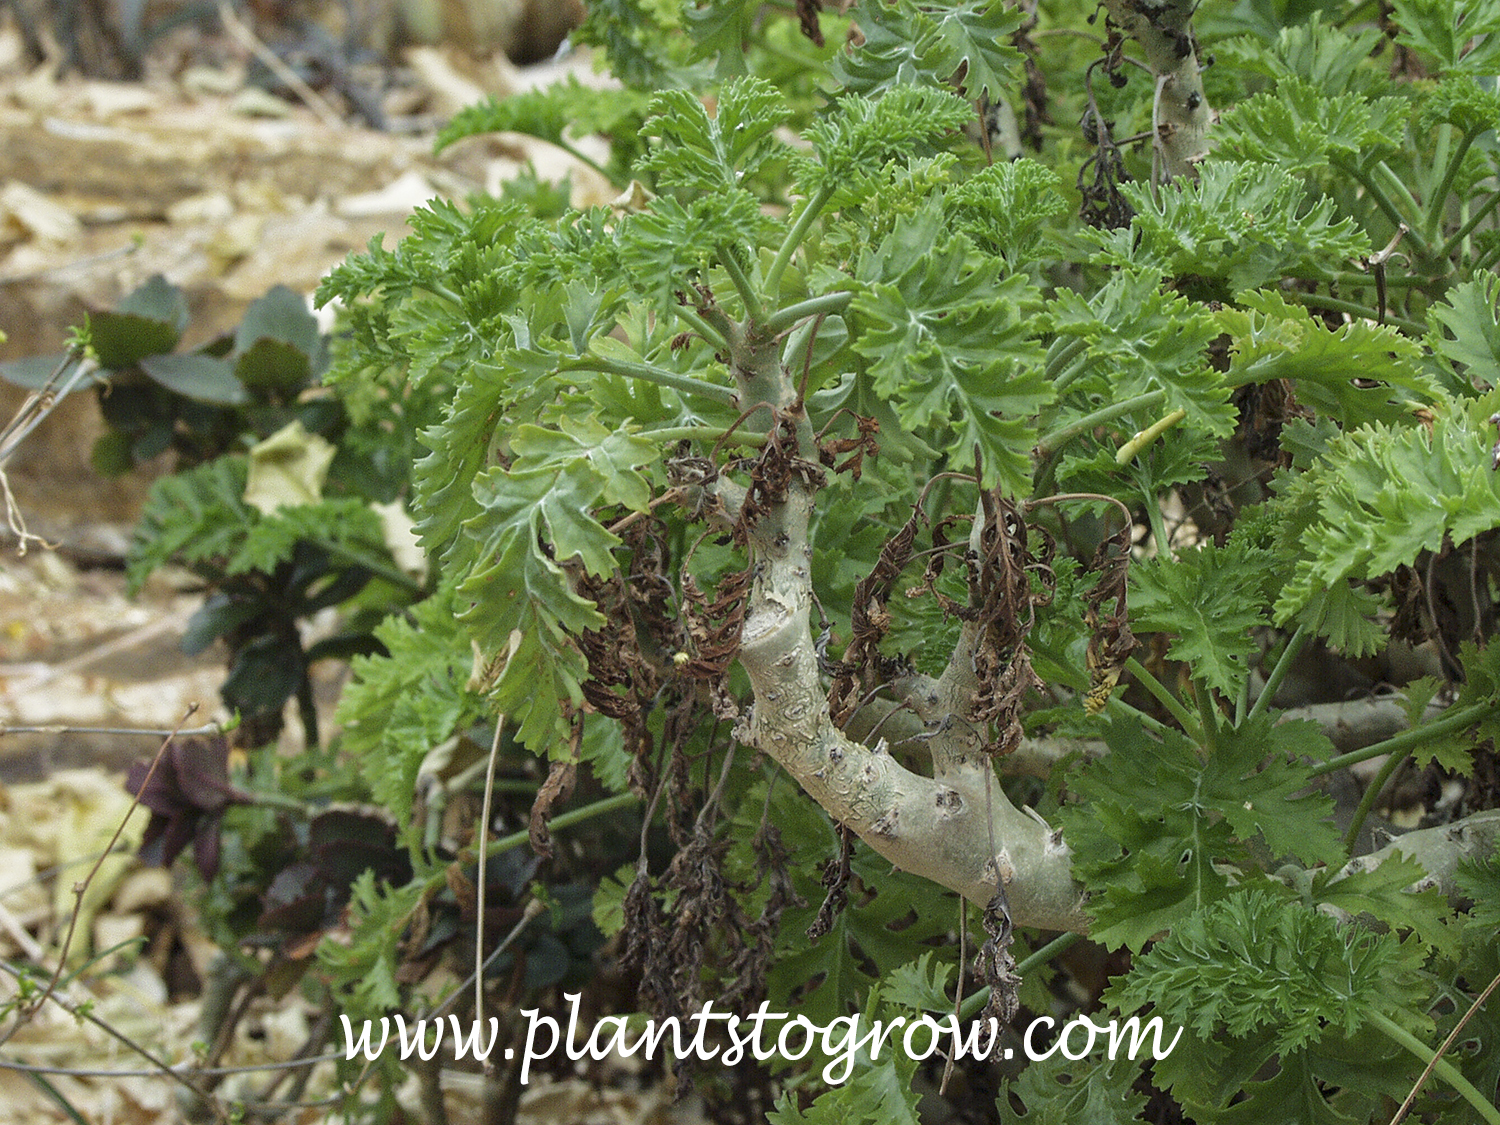 Fleshy Stalk Pelargonium (Pelargonium carnosum) 
It is easy to see how this plant got its common name, 'Flesh Stalk' Pelargonium